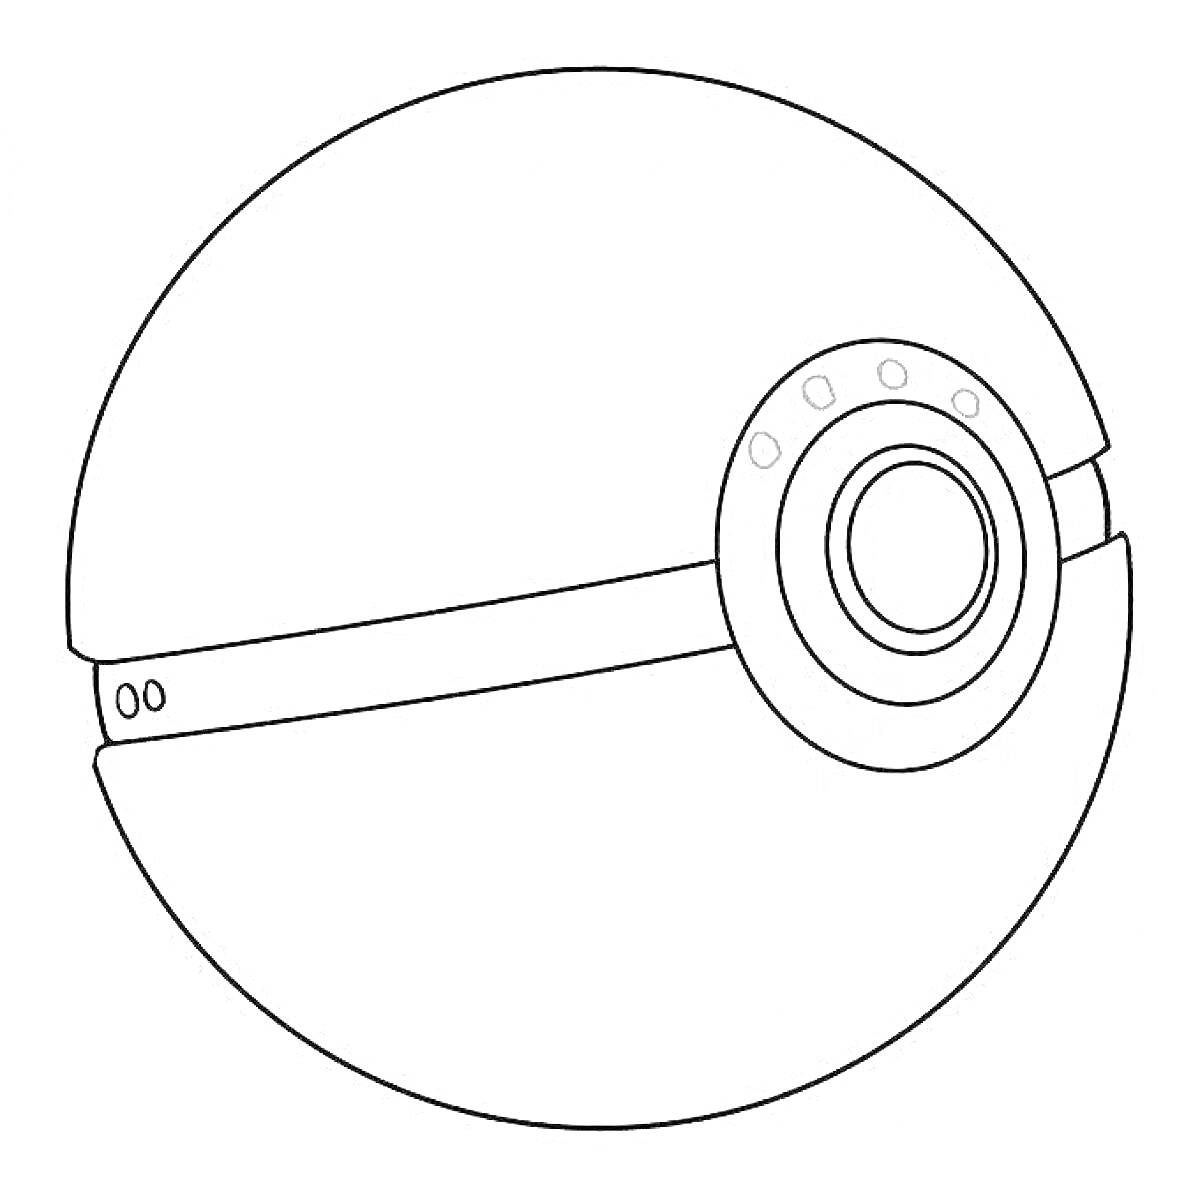 Раскраска Покебол с центральным круглым элементом и кнопкой на горизонтальной полосе